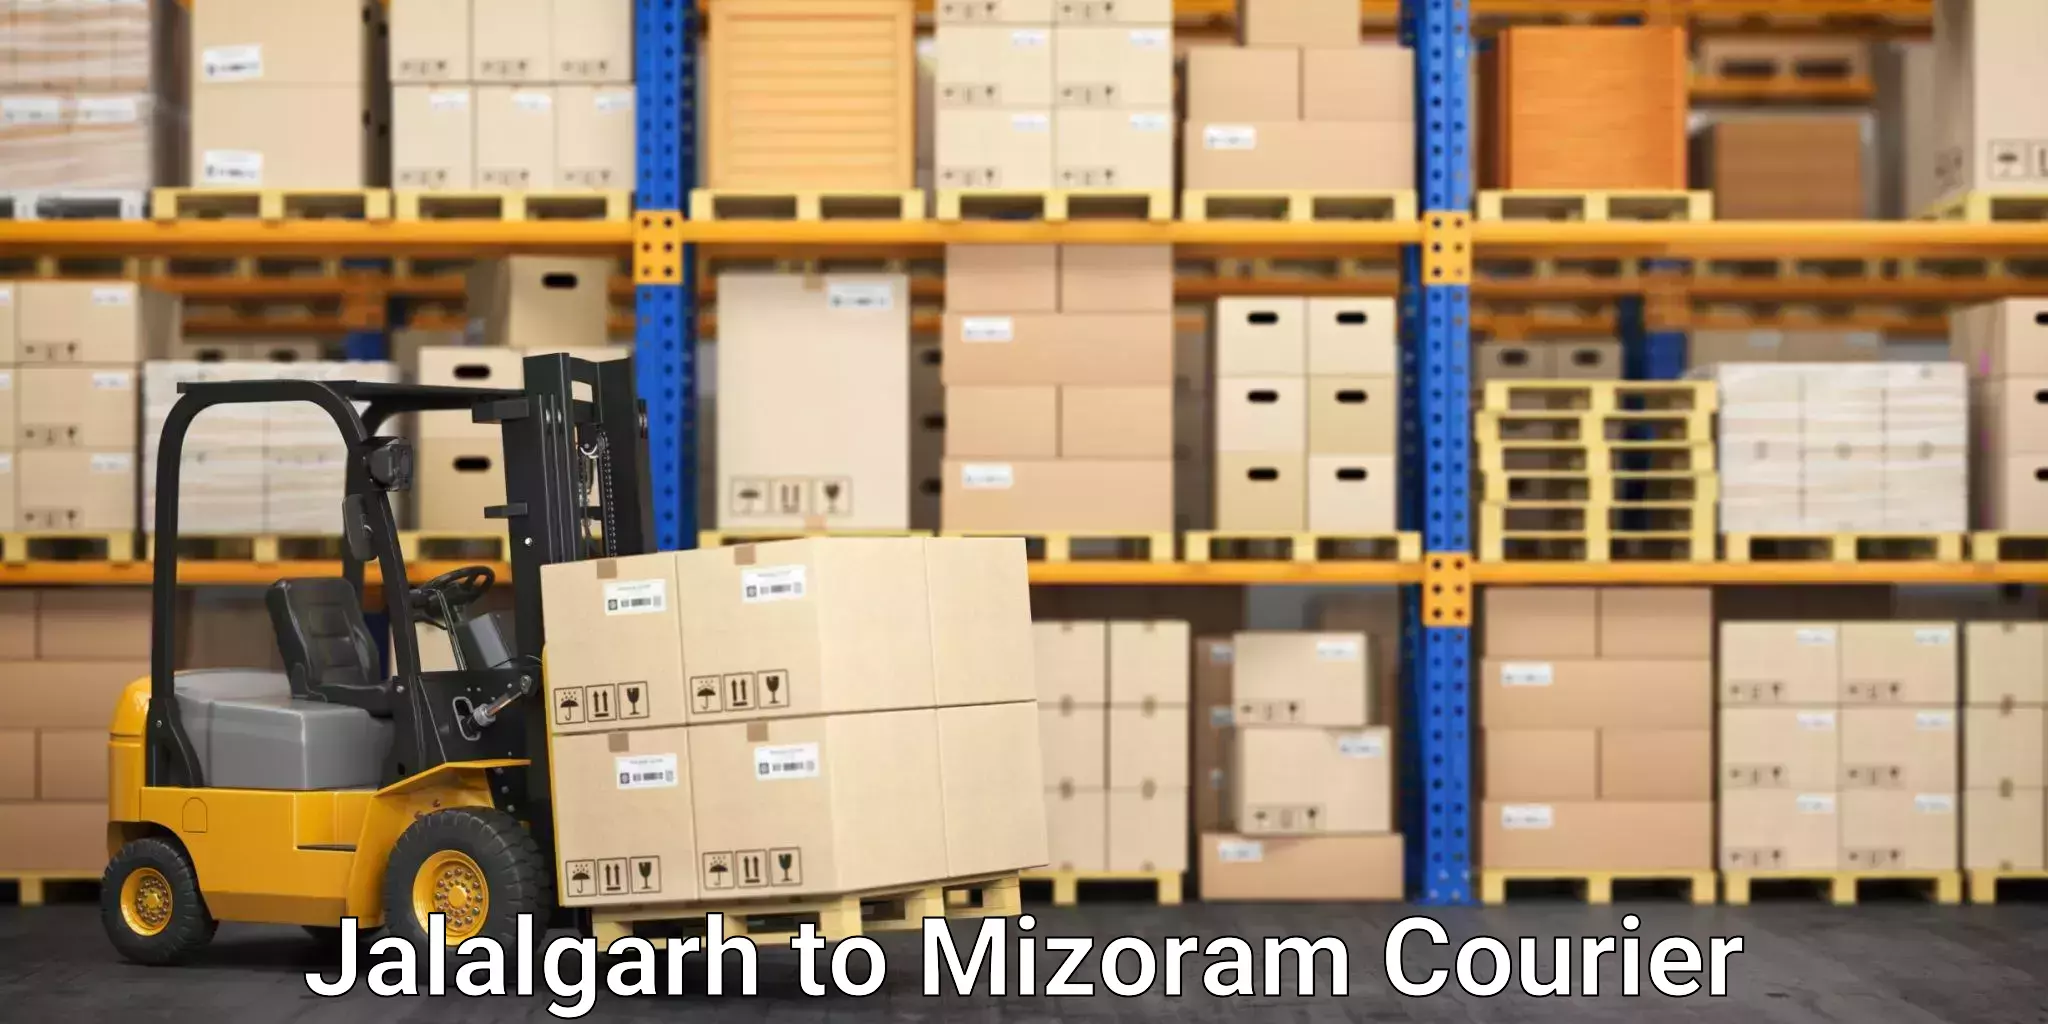 Moving and storage services Jalalgarh to Mizoram